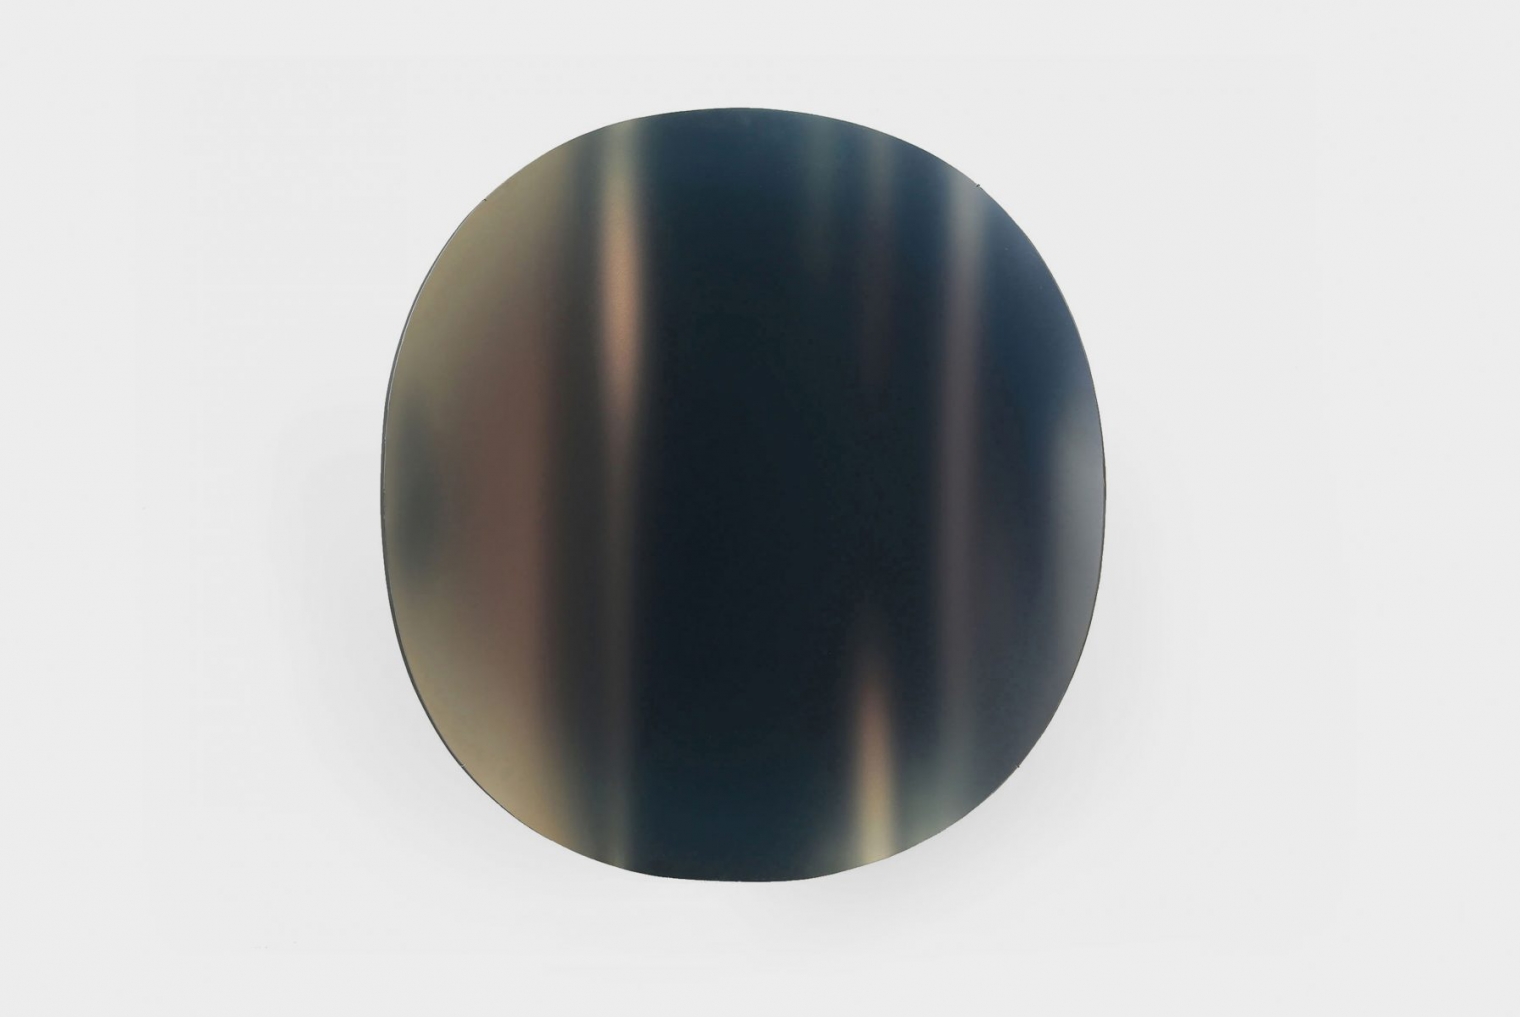 MIRRORS; Material: wood, plexsi-glass, UV print; Dimension: 100 x 85 x 15 cm, Date: 2013-2015